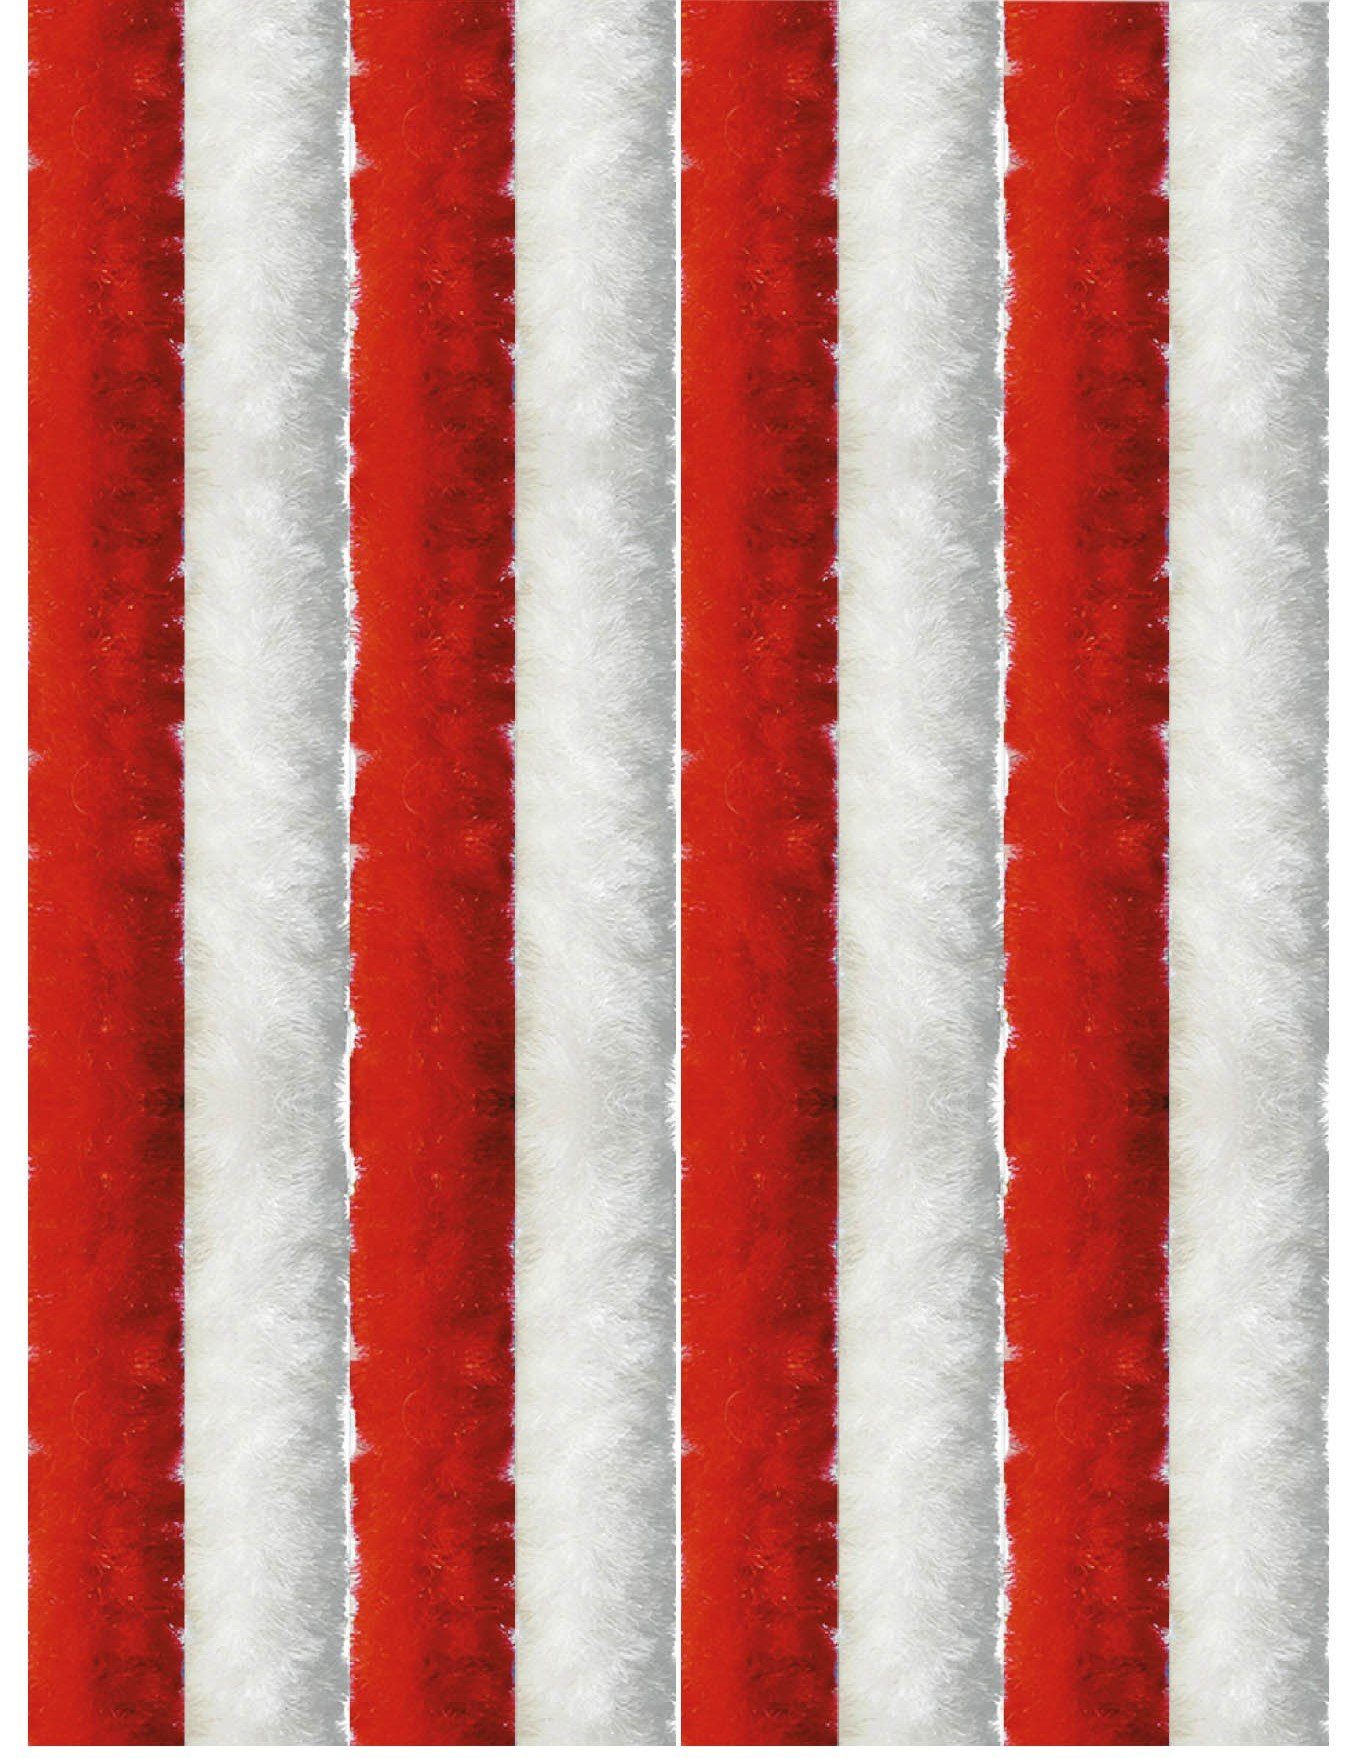 Türvorhang Flauschi, Arsvita, Ösen (1 St), Flauschvorhang 160x185 cm in Unistreifen rot - weiß, viele Farben | Raumteiler-Vorhänge